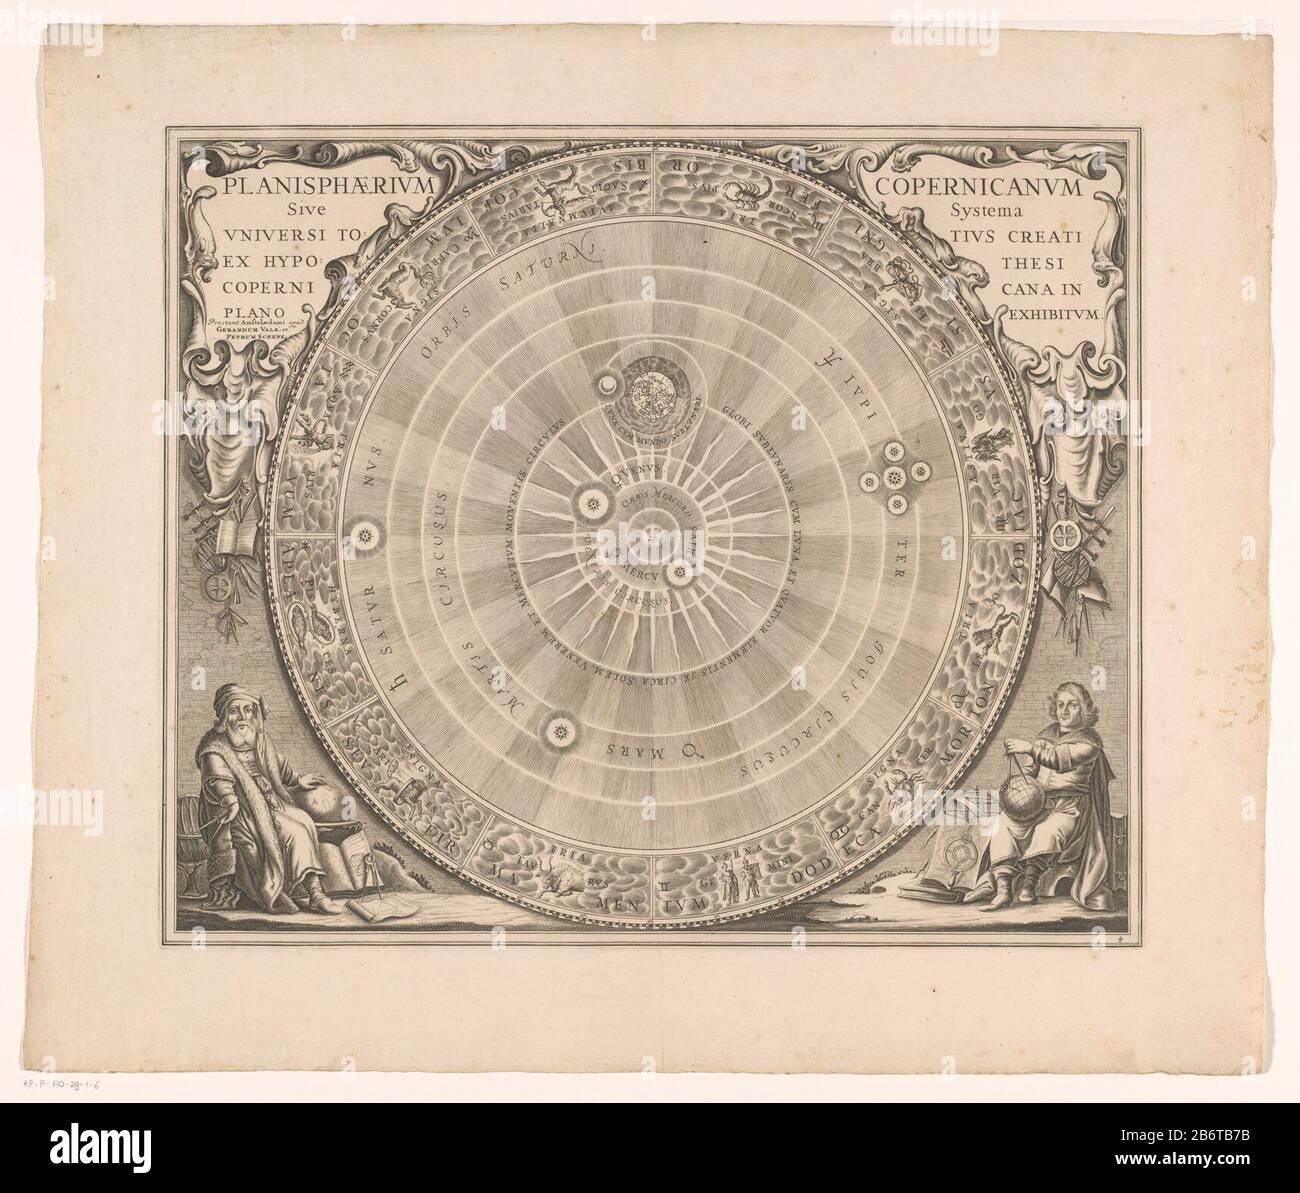 Hemelkaart van het stelsel van Copernicus Planisphaerium Copernicanum systema systema universi totius creati ex ipotesi () (titel op object) Sky Map Dove: Il sistema eliocentrico di Nicolaus Copernico da vedere. Al centro del sole, circondato dalle orbite dei pianeti e della terra intorno al sole. Giove andando a vedere quattro lune, scoperte da Galileo Galilei nel 1610. Nell'anello esterno dello zodiaco. La scheda è dotata di una scala di gradi lungo i bordi. Angolo sinistro e destro del telcartoces. In basso a sinistra e a destra con un cartografo ad alte prestazioni, probabilmente Nicolaus Cop Foto Stock